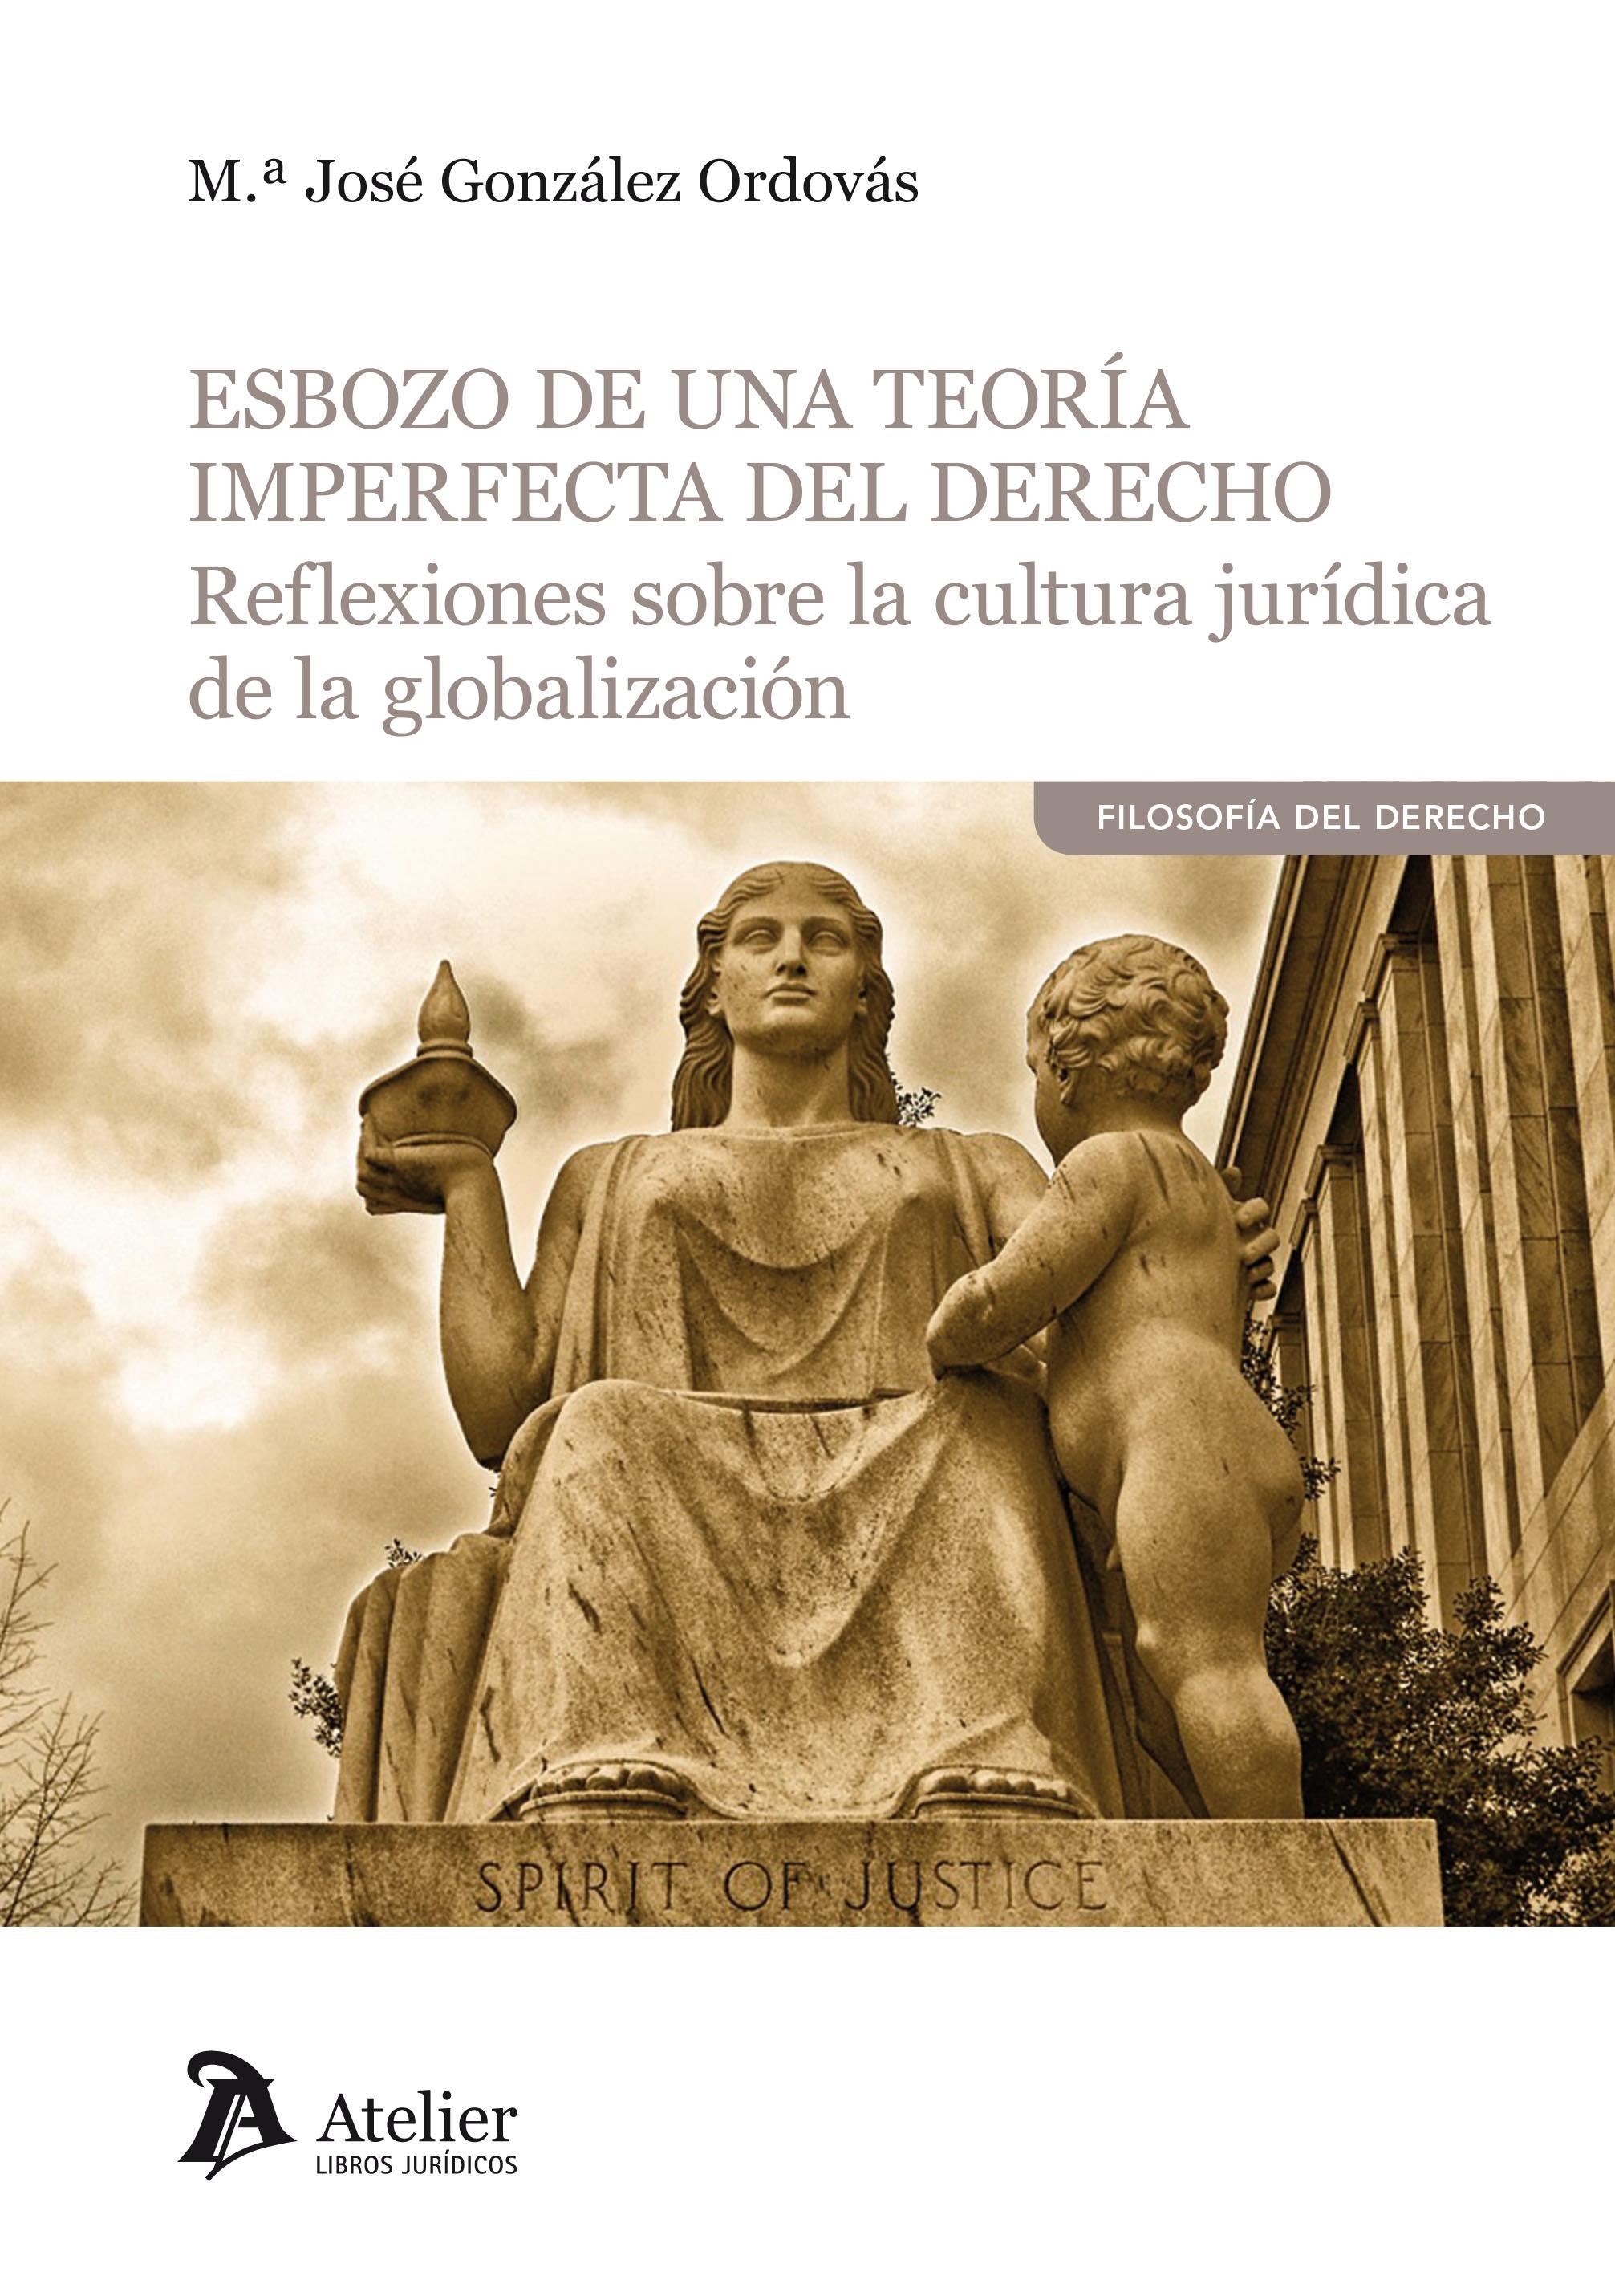 Esbozo de una teoría imperfecta del Derecho  "Reflexiones sobre la cultura jurídica de la globalización "